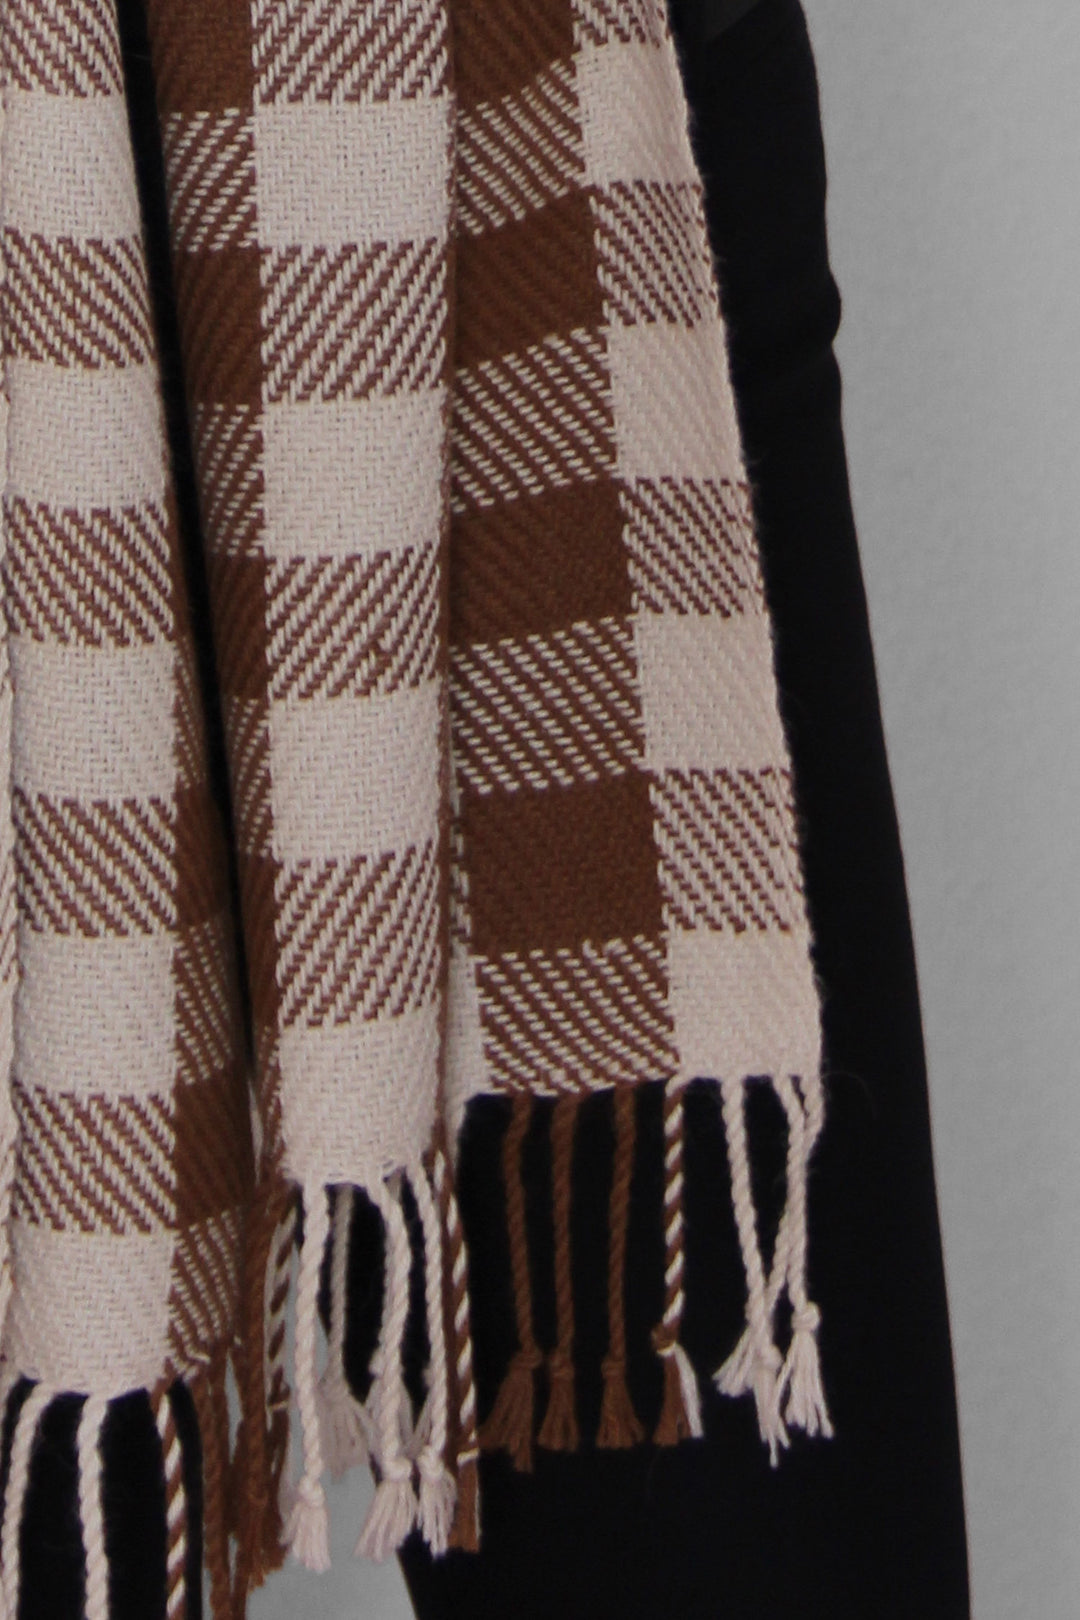 Karierter Schal aus Alpakawolle in braunen und weißen Farben mit Fransen.